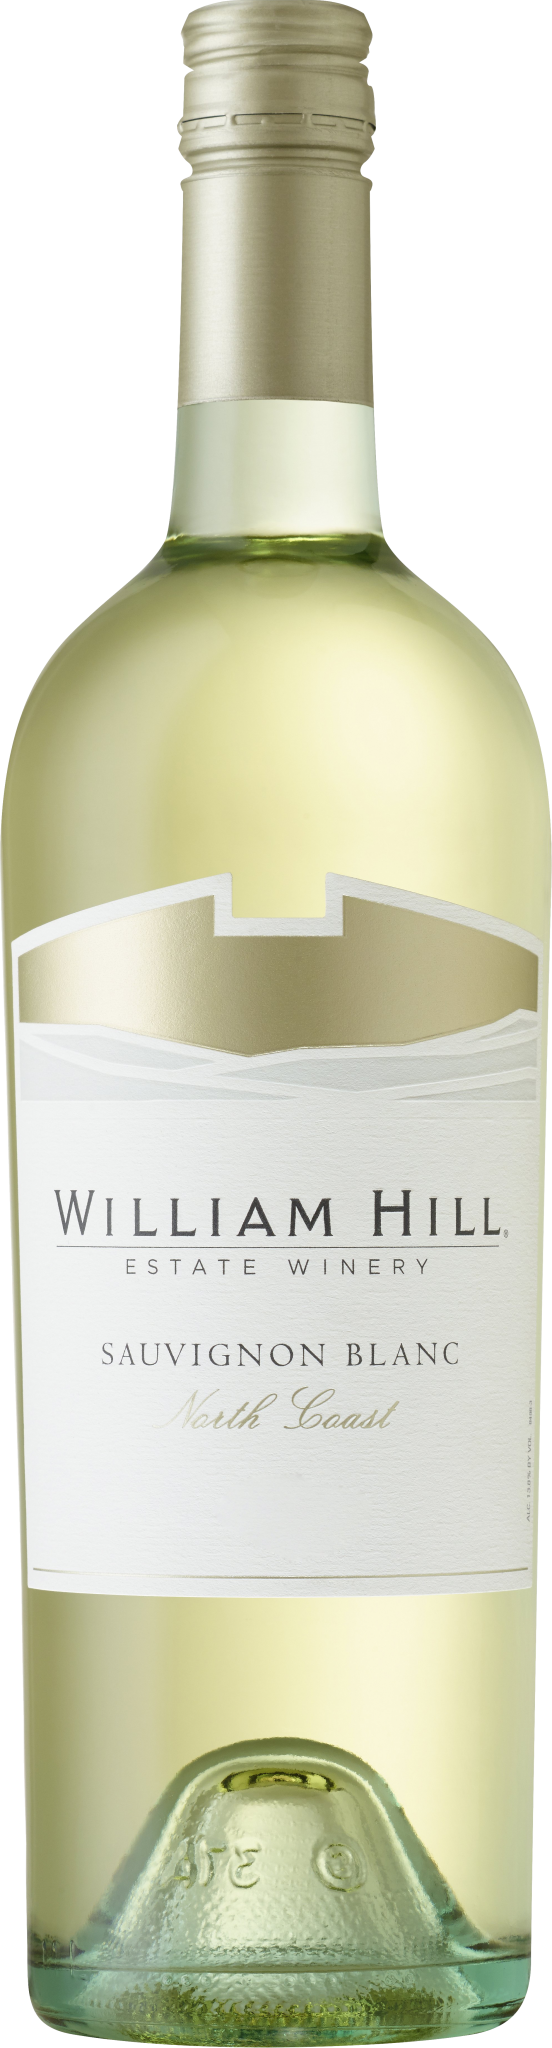 William Hill Sauvignon Blanc, North Coast